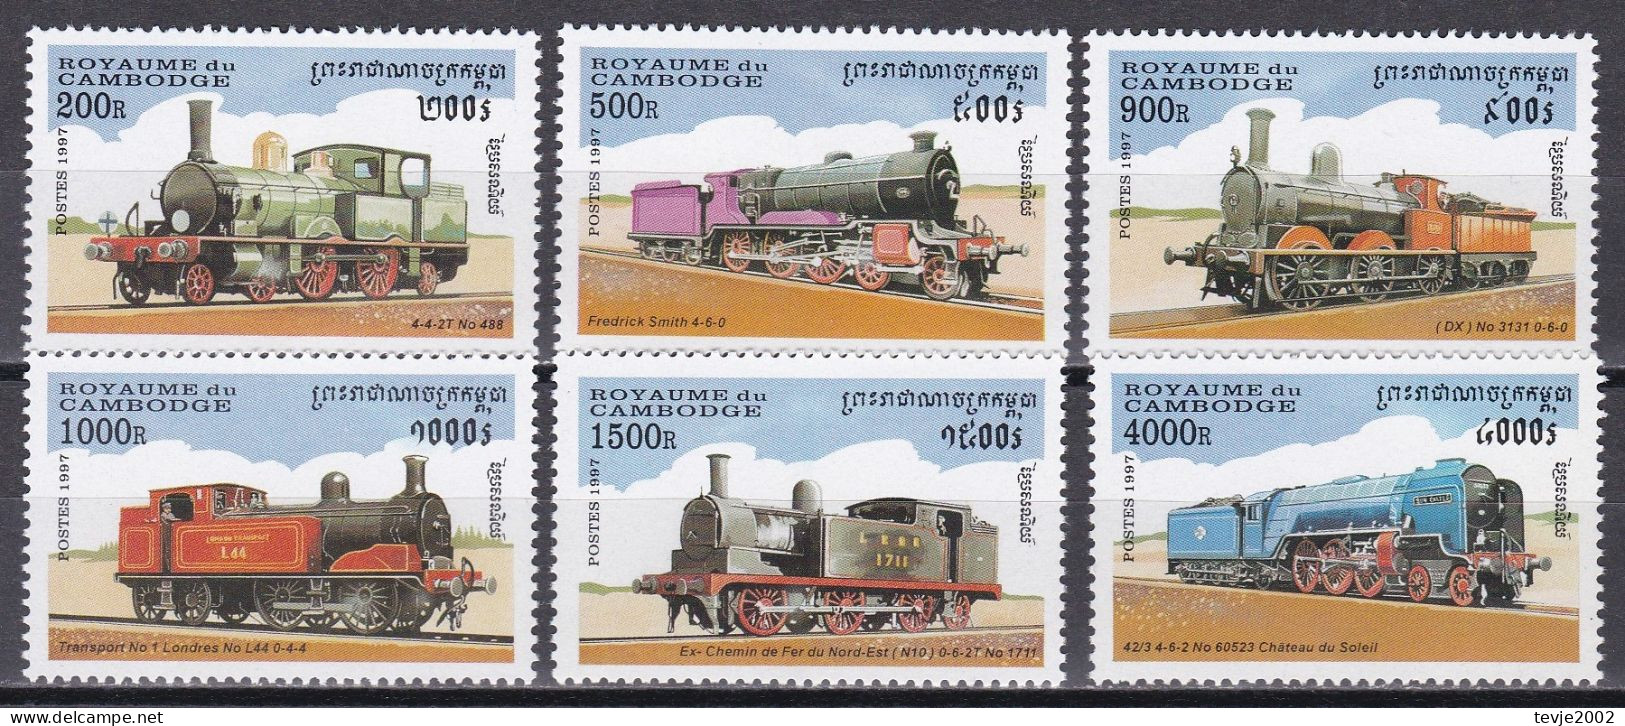 Kambodscha 1997 - Mi.Nr. 1724 - 1729 - Postfrisch MNH - Eisenbahnen Railways Lokomotiven Locomotives - Trains